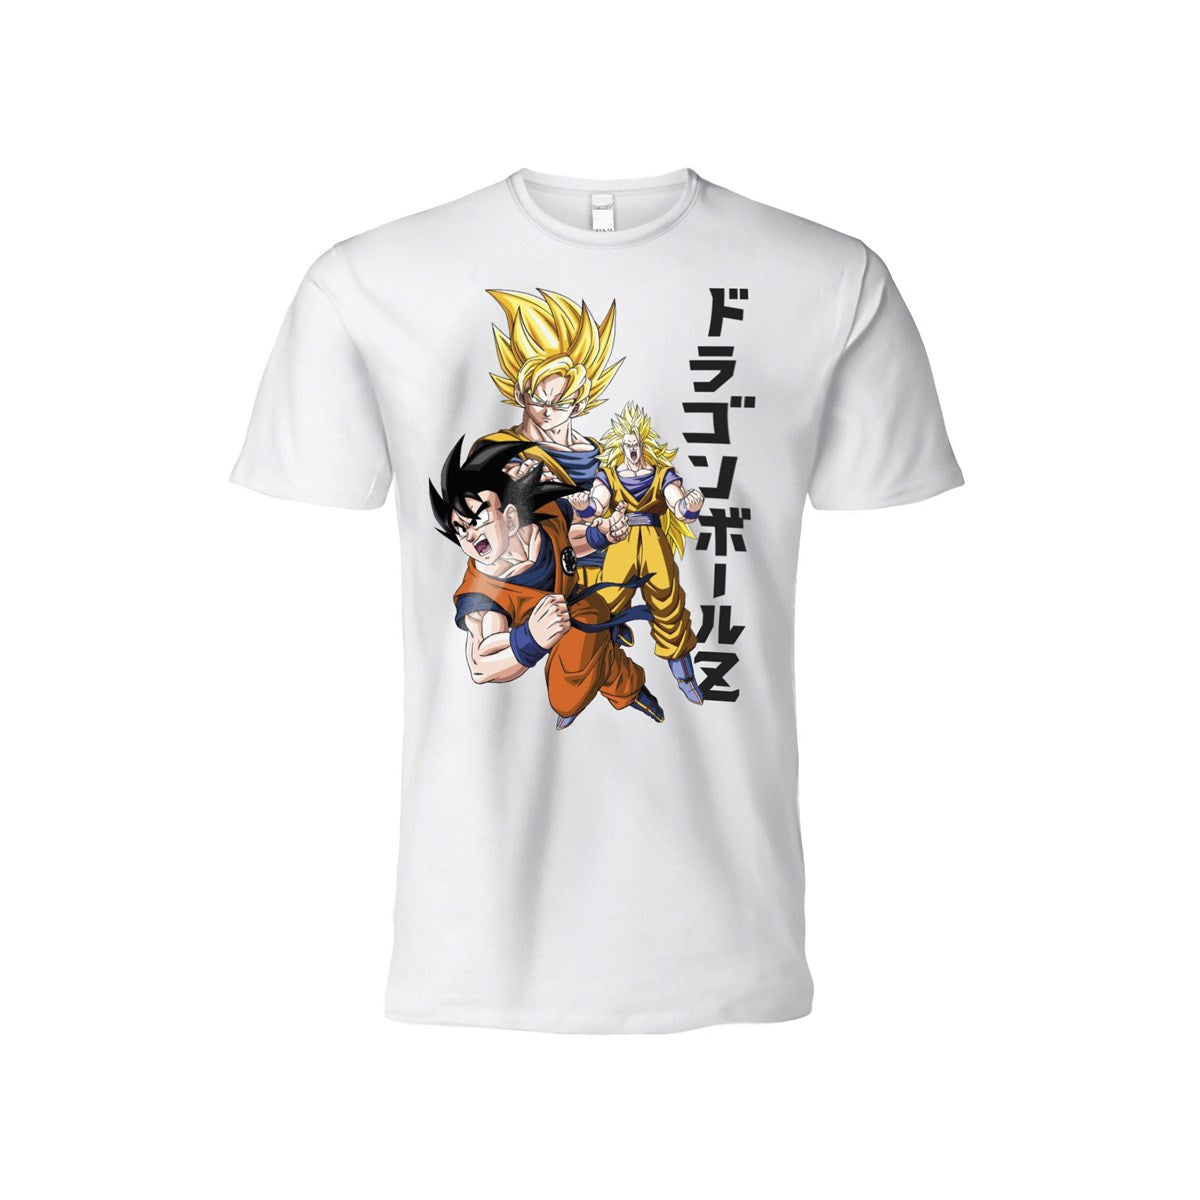 DRAGON BALL: Goku S.Saiyan livello 1-2-3 T-Shirt S bianca - Disponibile in 2/3 giorni lavorativi